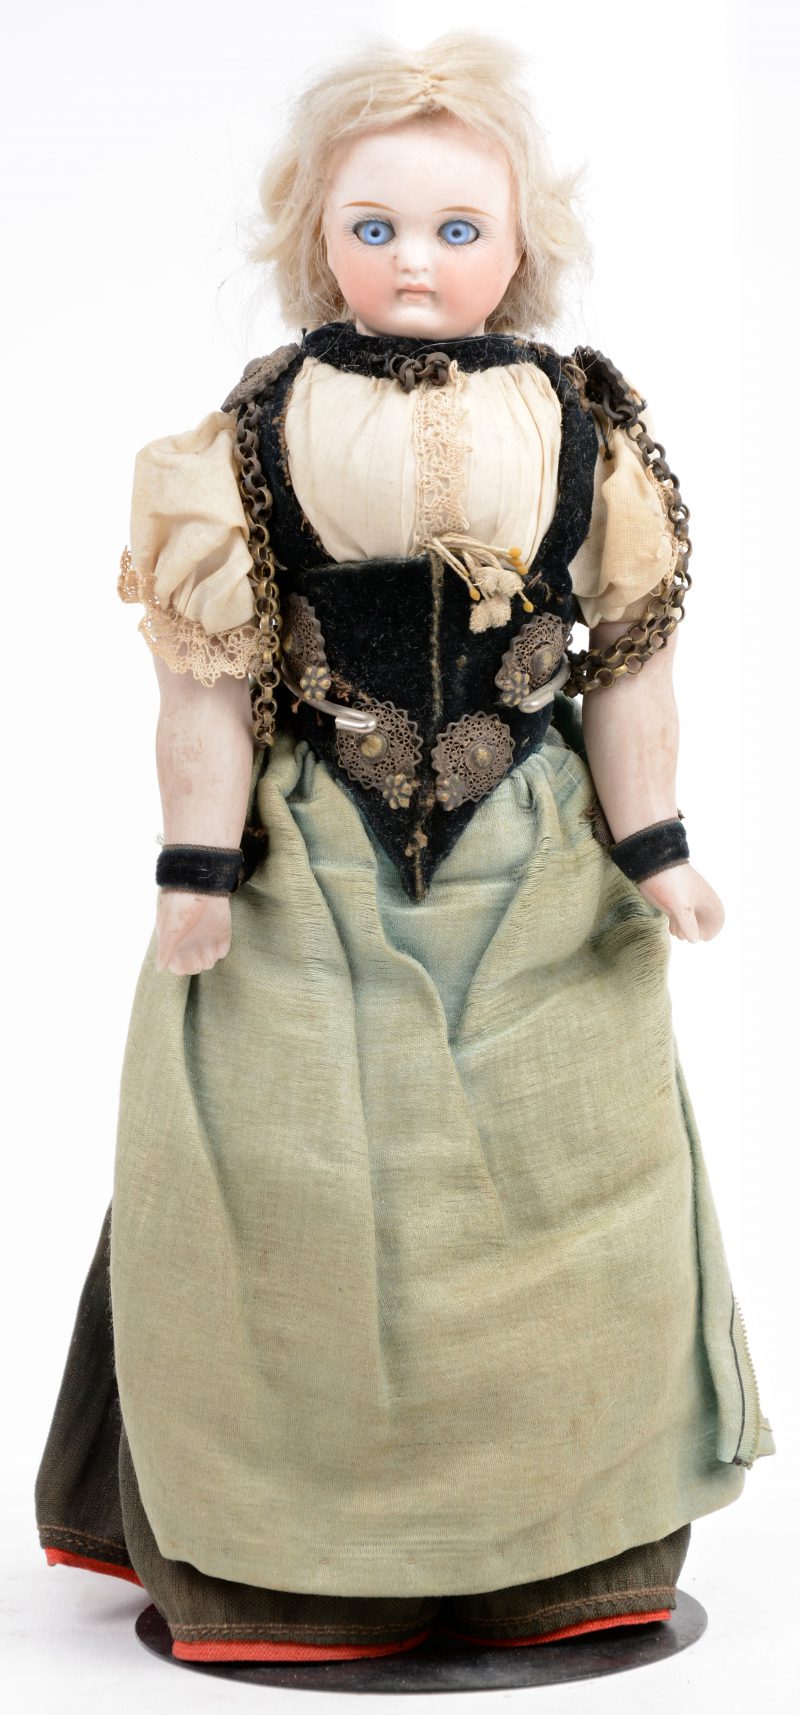 Antieke pop met schouderplaathoofdje. Lijfje van textiel, met porseleinen onderarmen. Originele klederdracht (Zeeuws?).